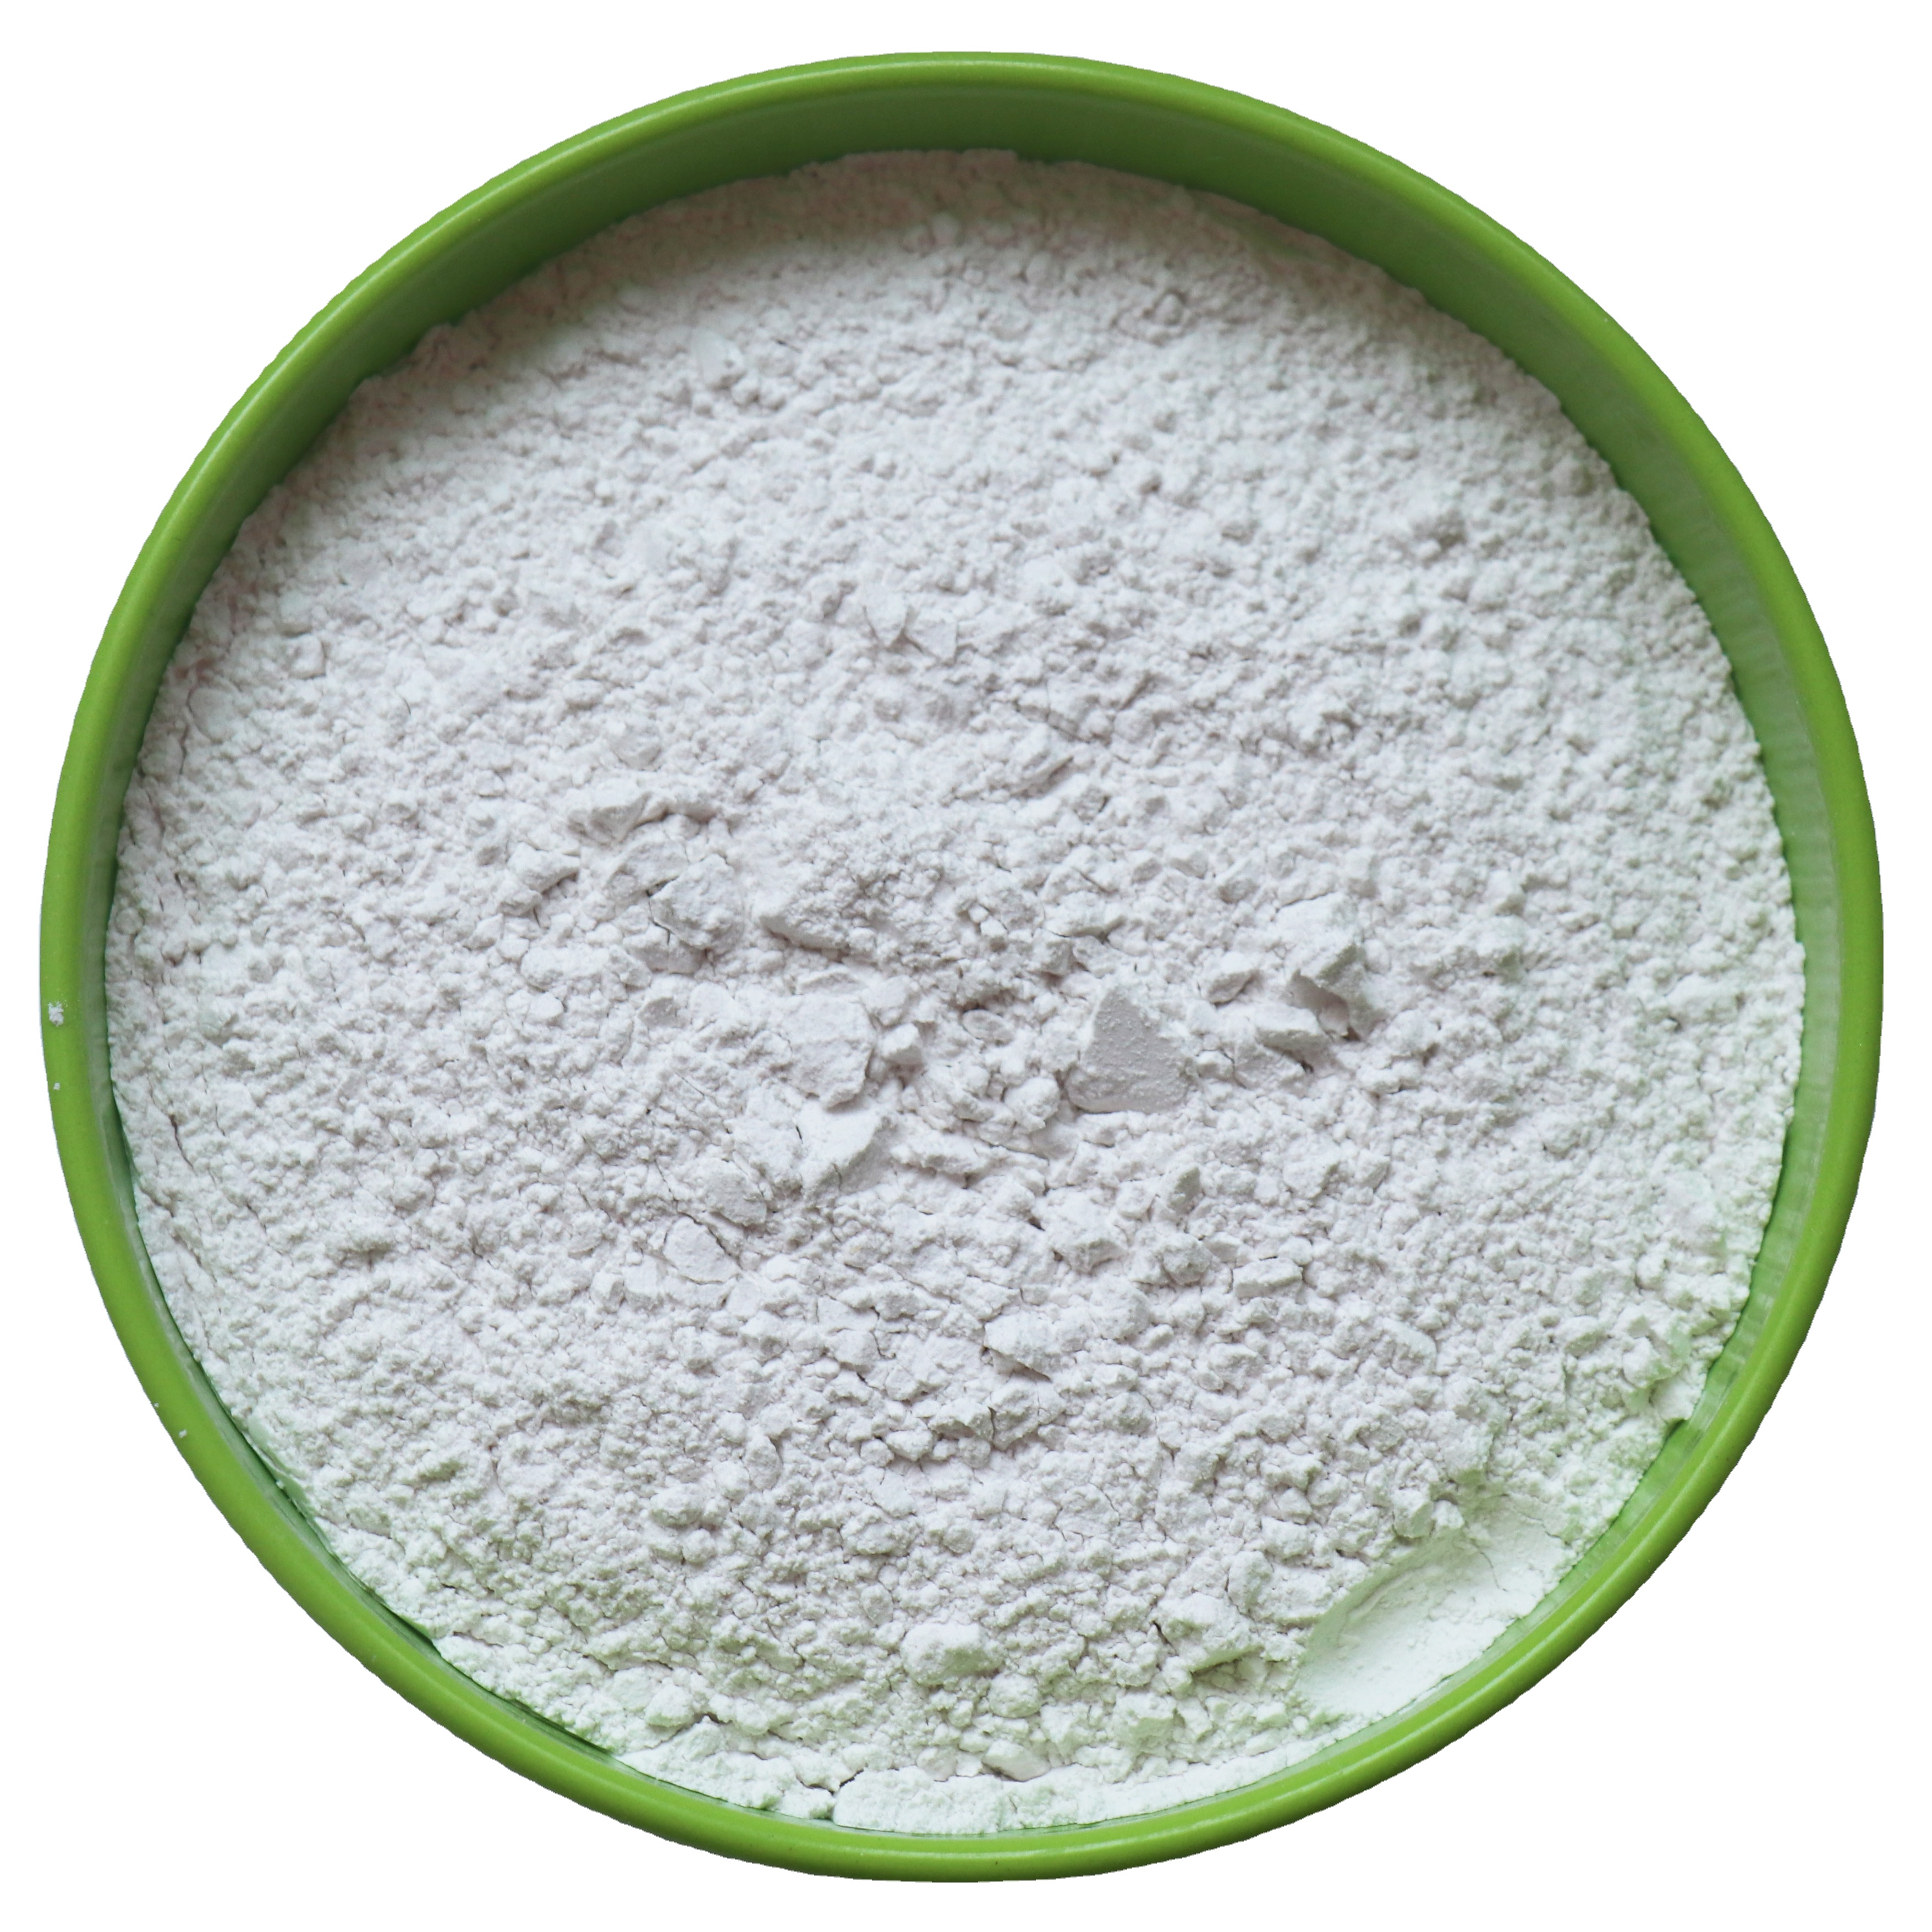 Direct selling price of precipitated barium sulfate Baso4 barite ore powder Featured Image